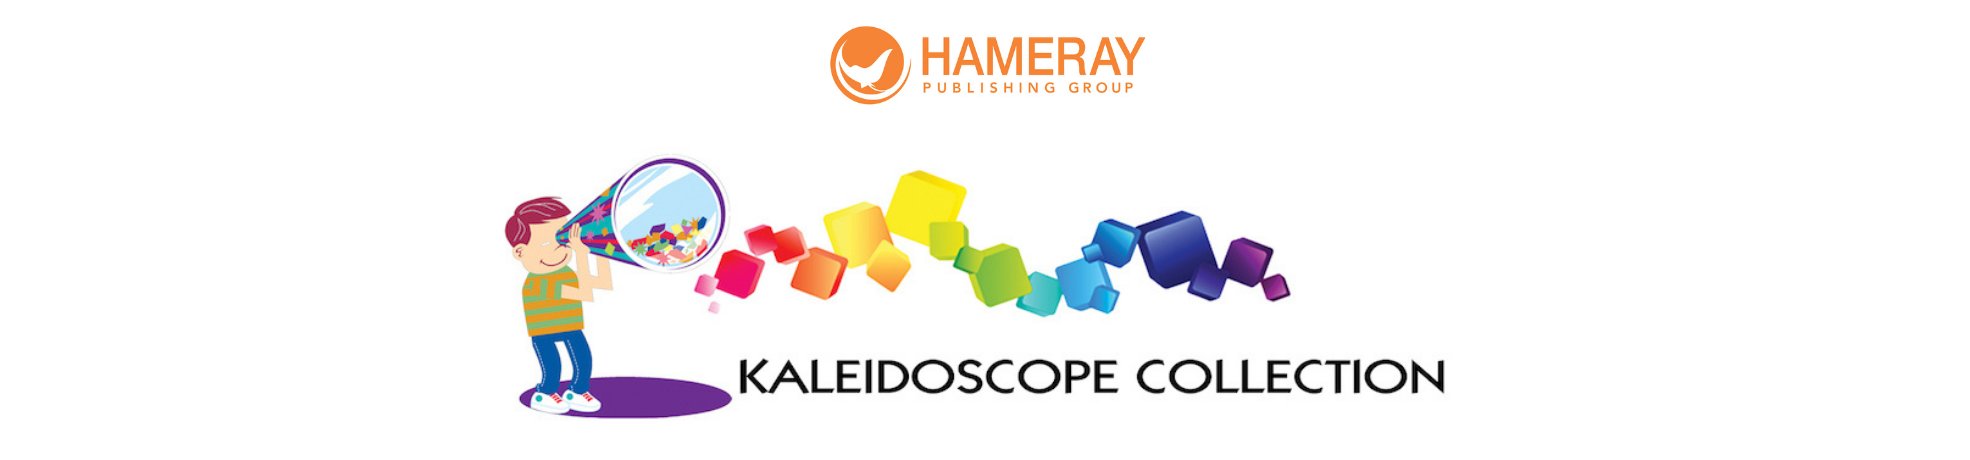 Crash Cars - Kaleidoscope Collection - Hameray Publishing